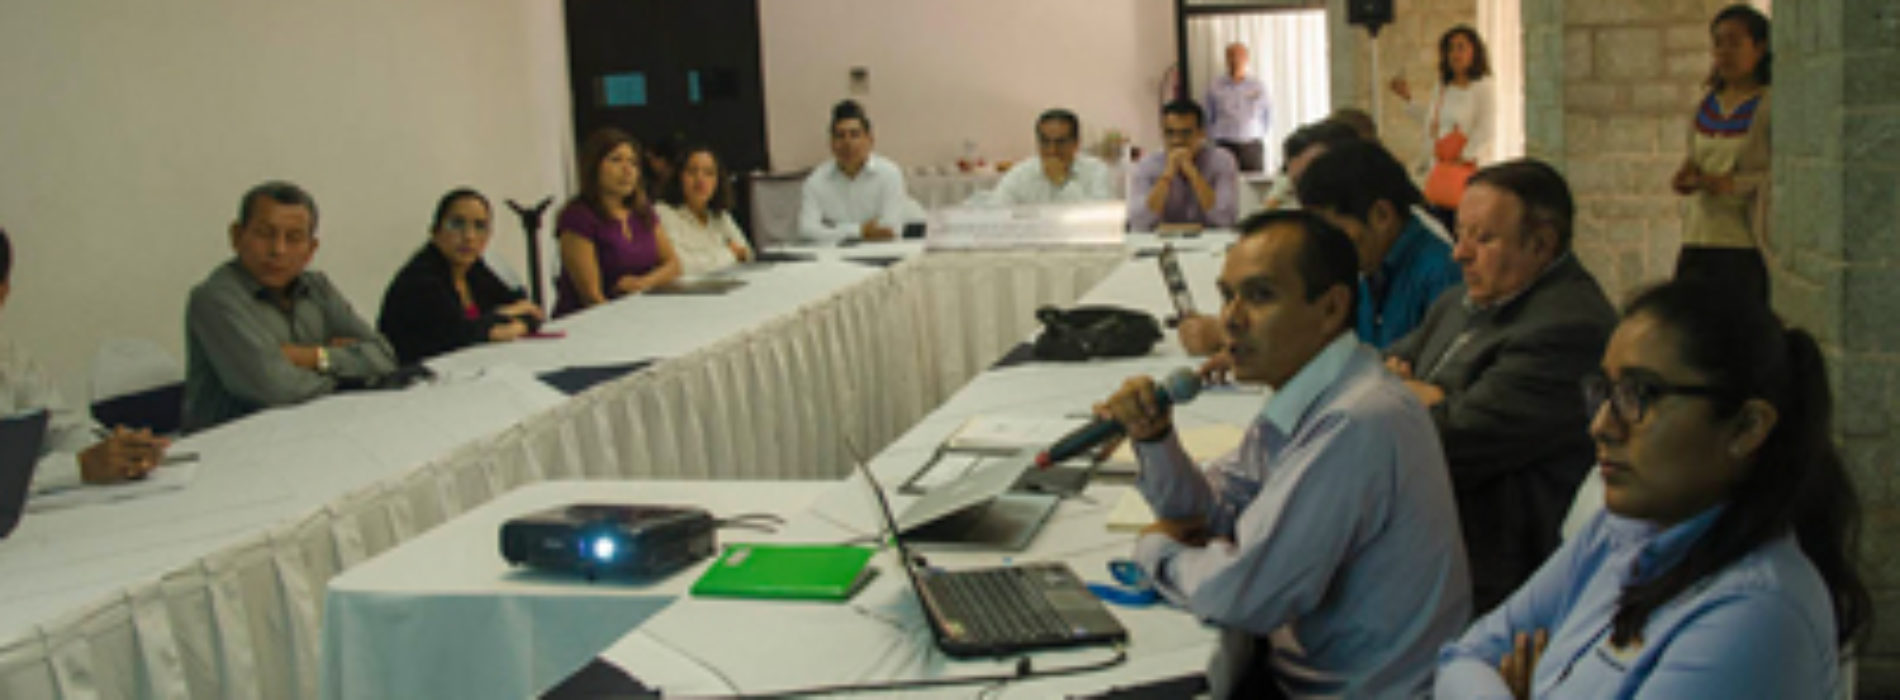 Encabeza IEEPO Segunda Reunión para Mejorar la Atención Educativa de escolares jornaleros migrantes